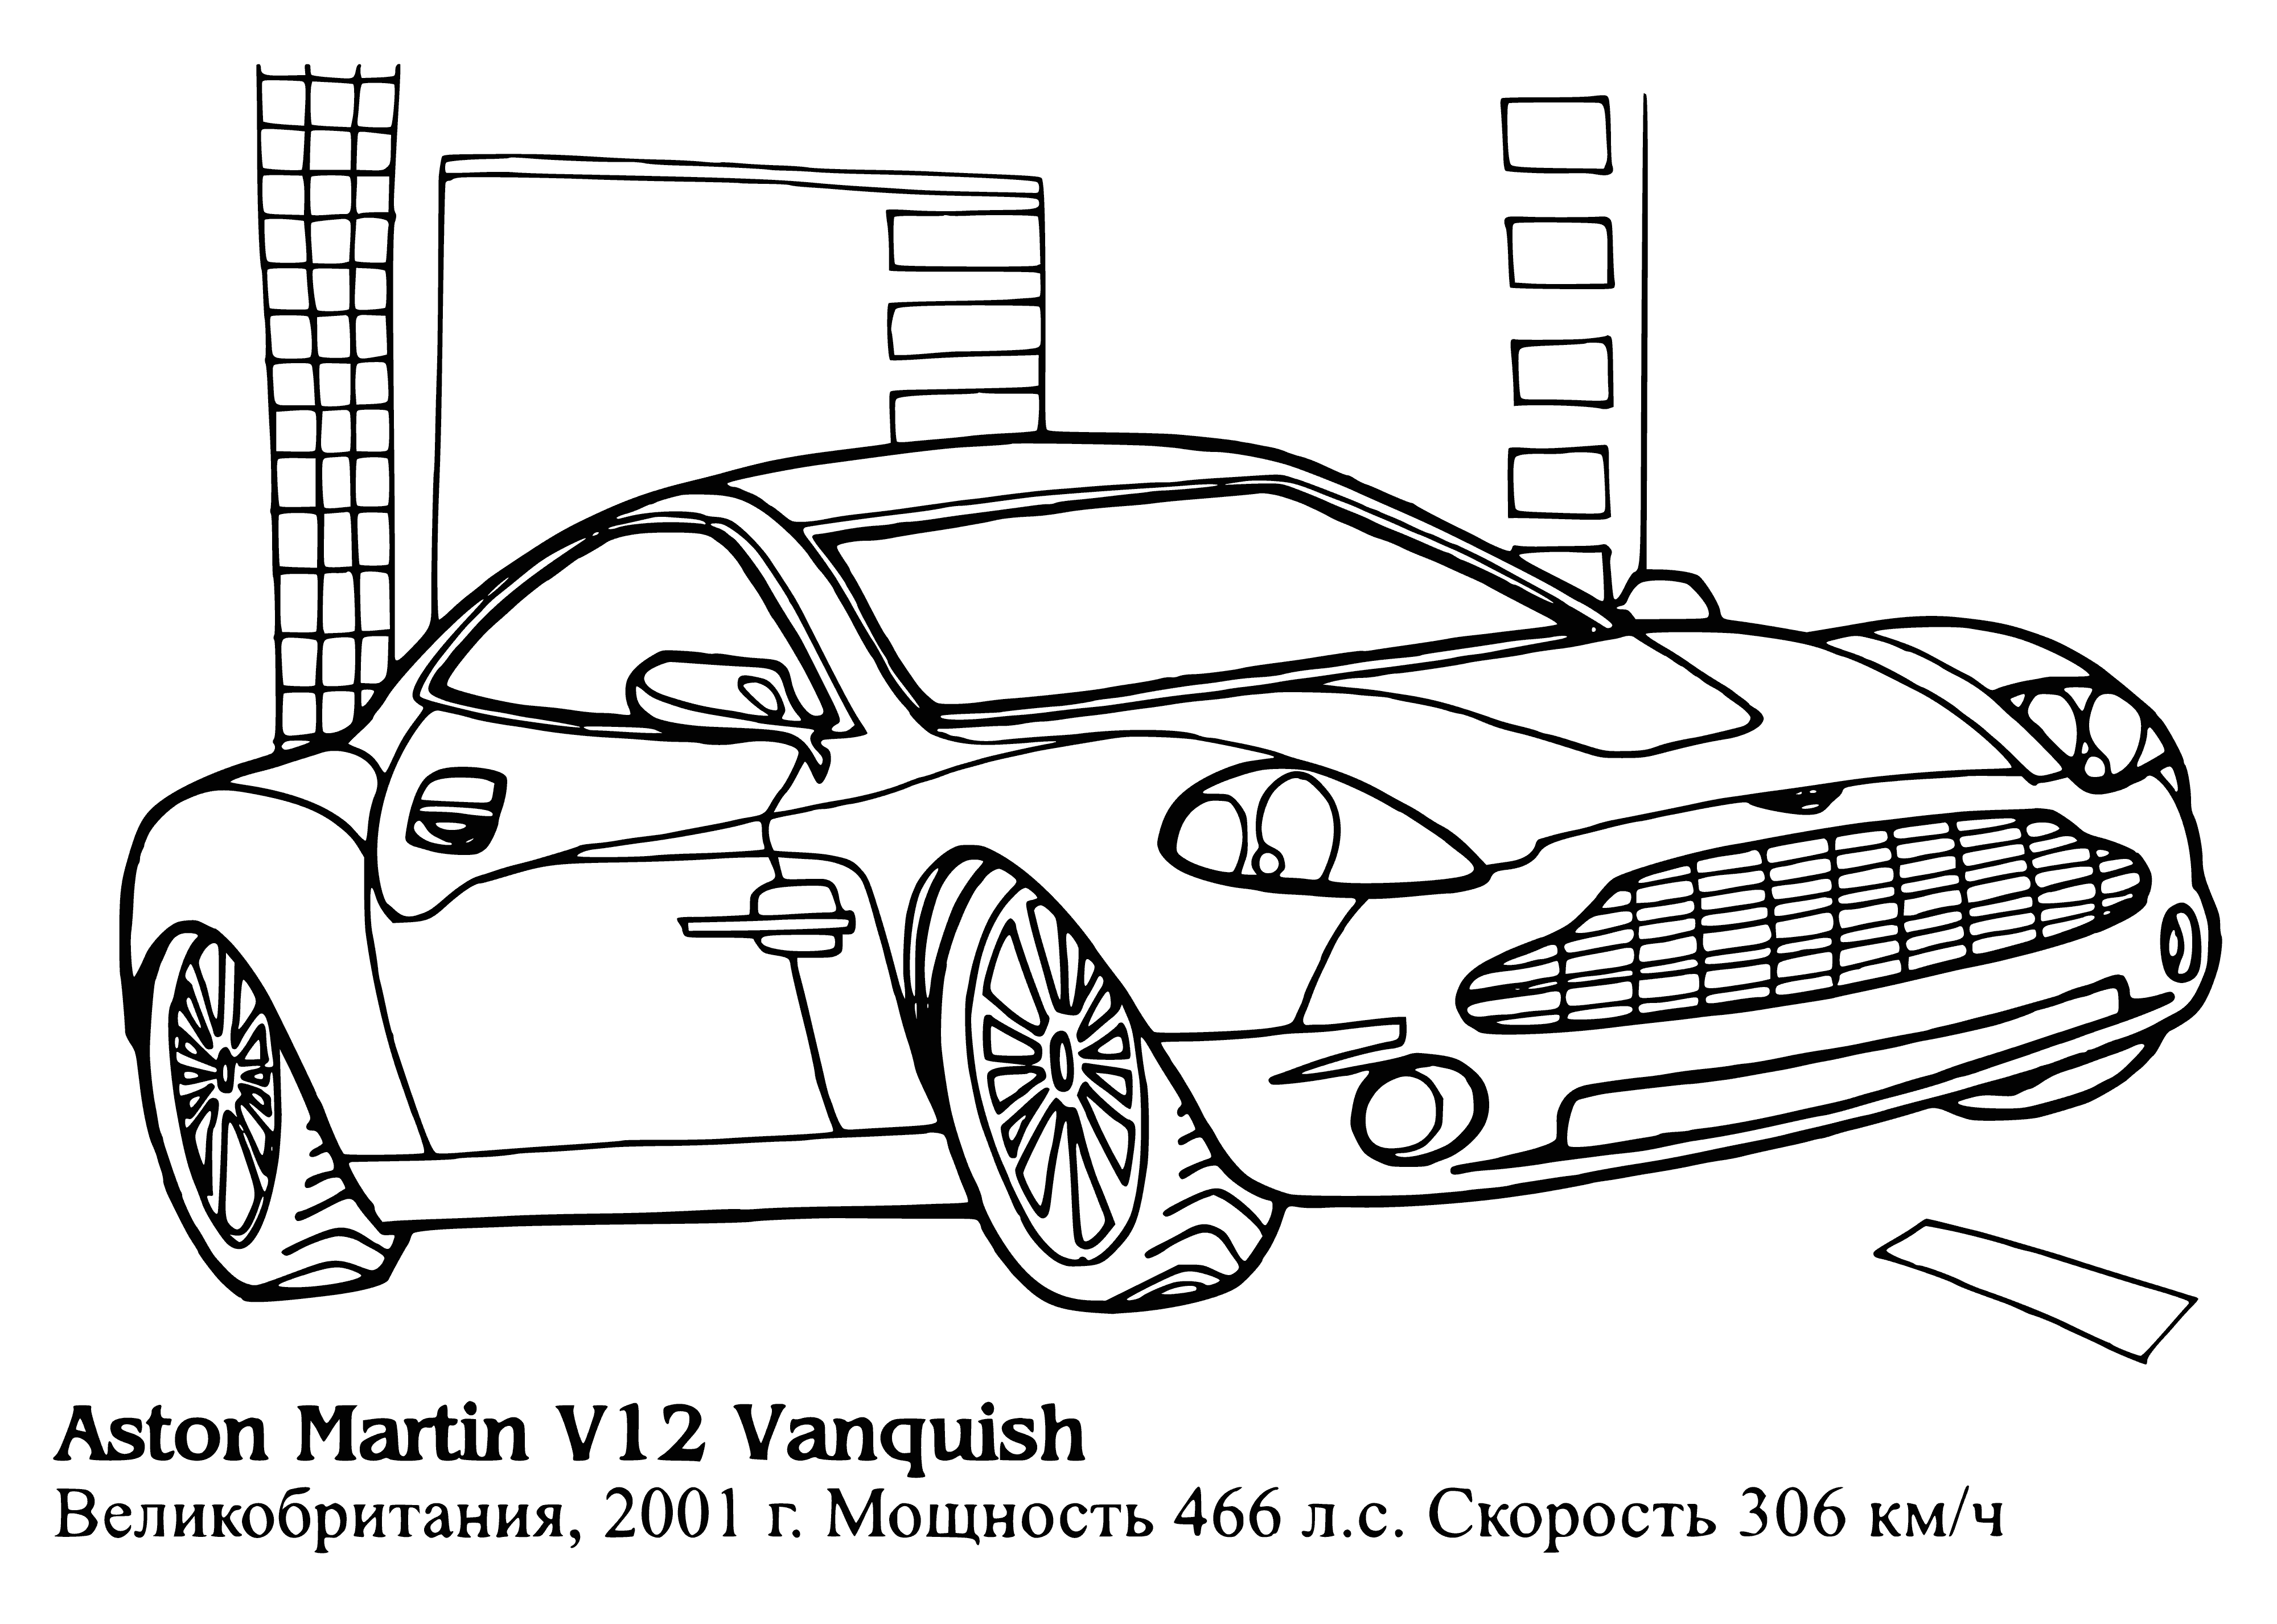 Aston Martin V12 zwycięża kolorowanka